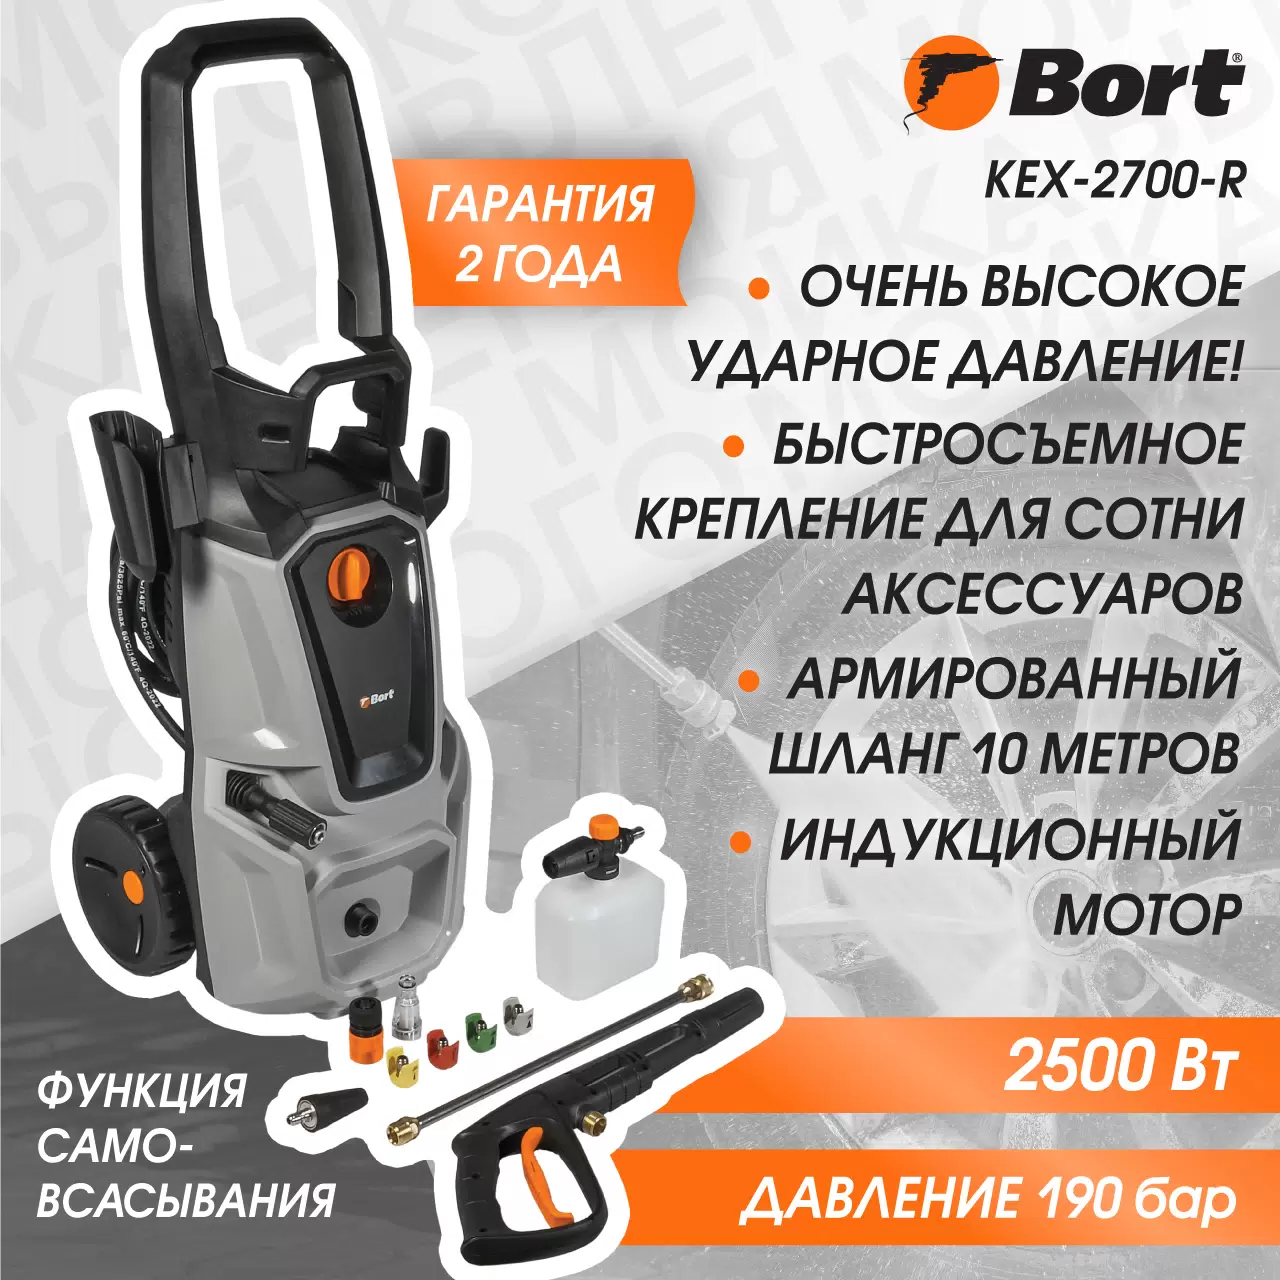 Купить Мойка высокого давления Bort KEX-2700-R - Vlarnika